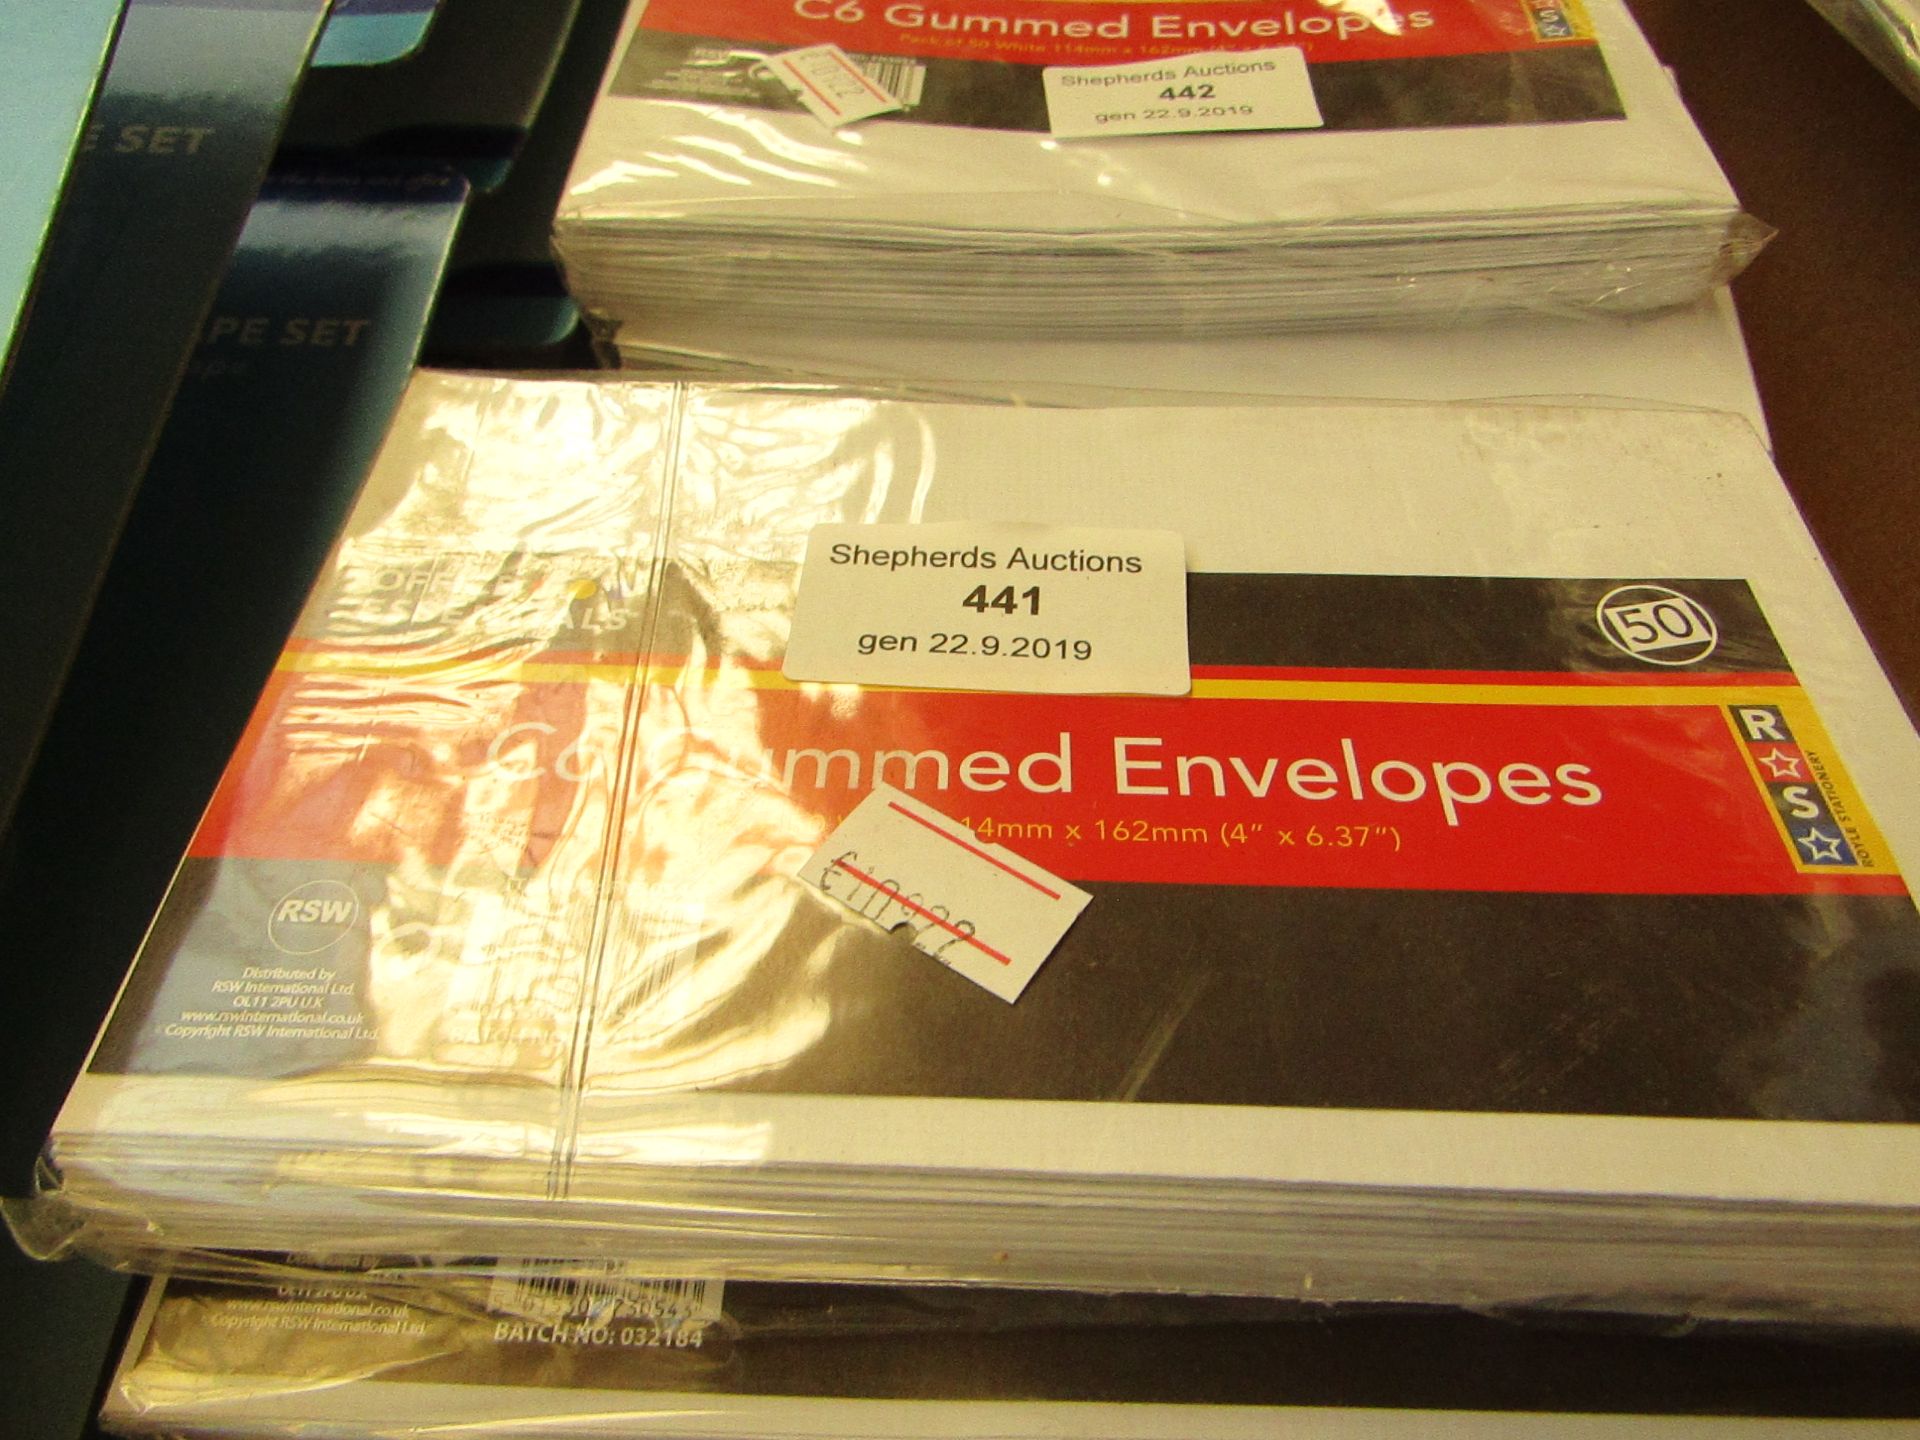 8 x C6 Gummed Envelopes.Packs of 50.114mm x 162mm.New & Packaged